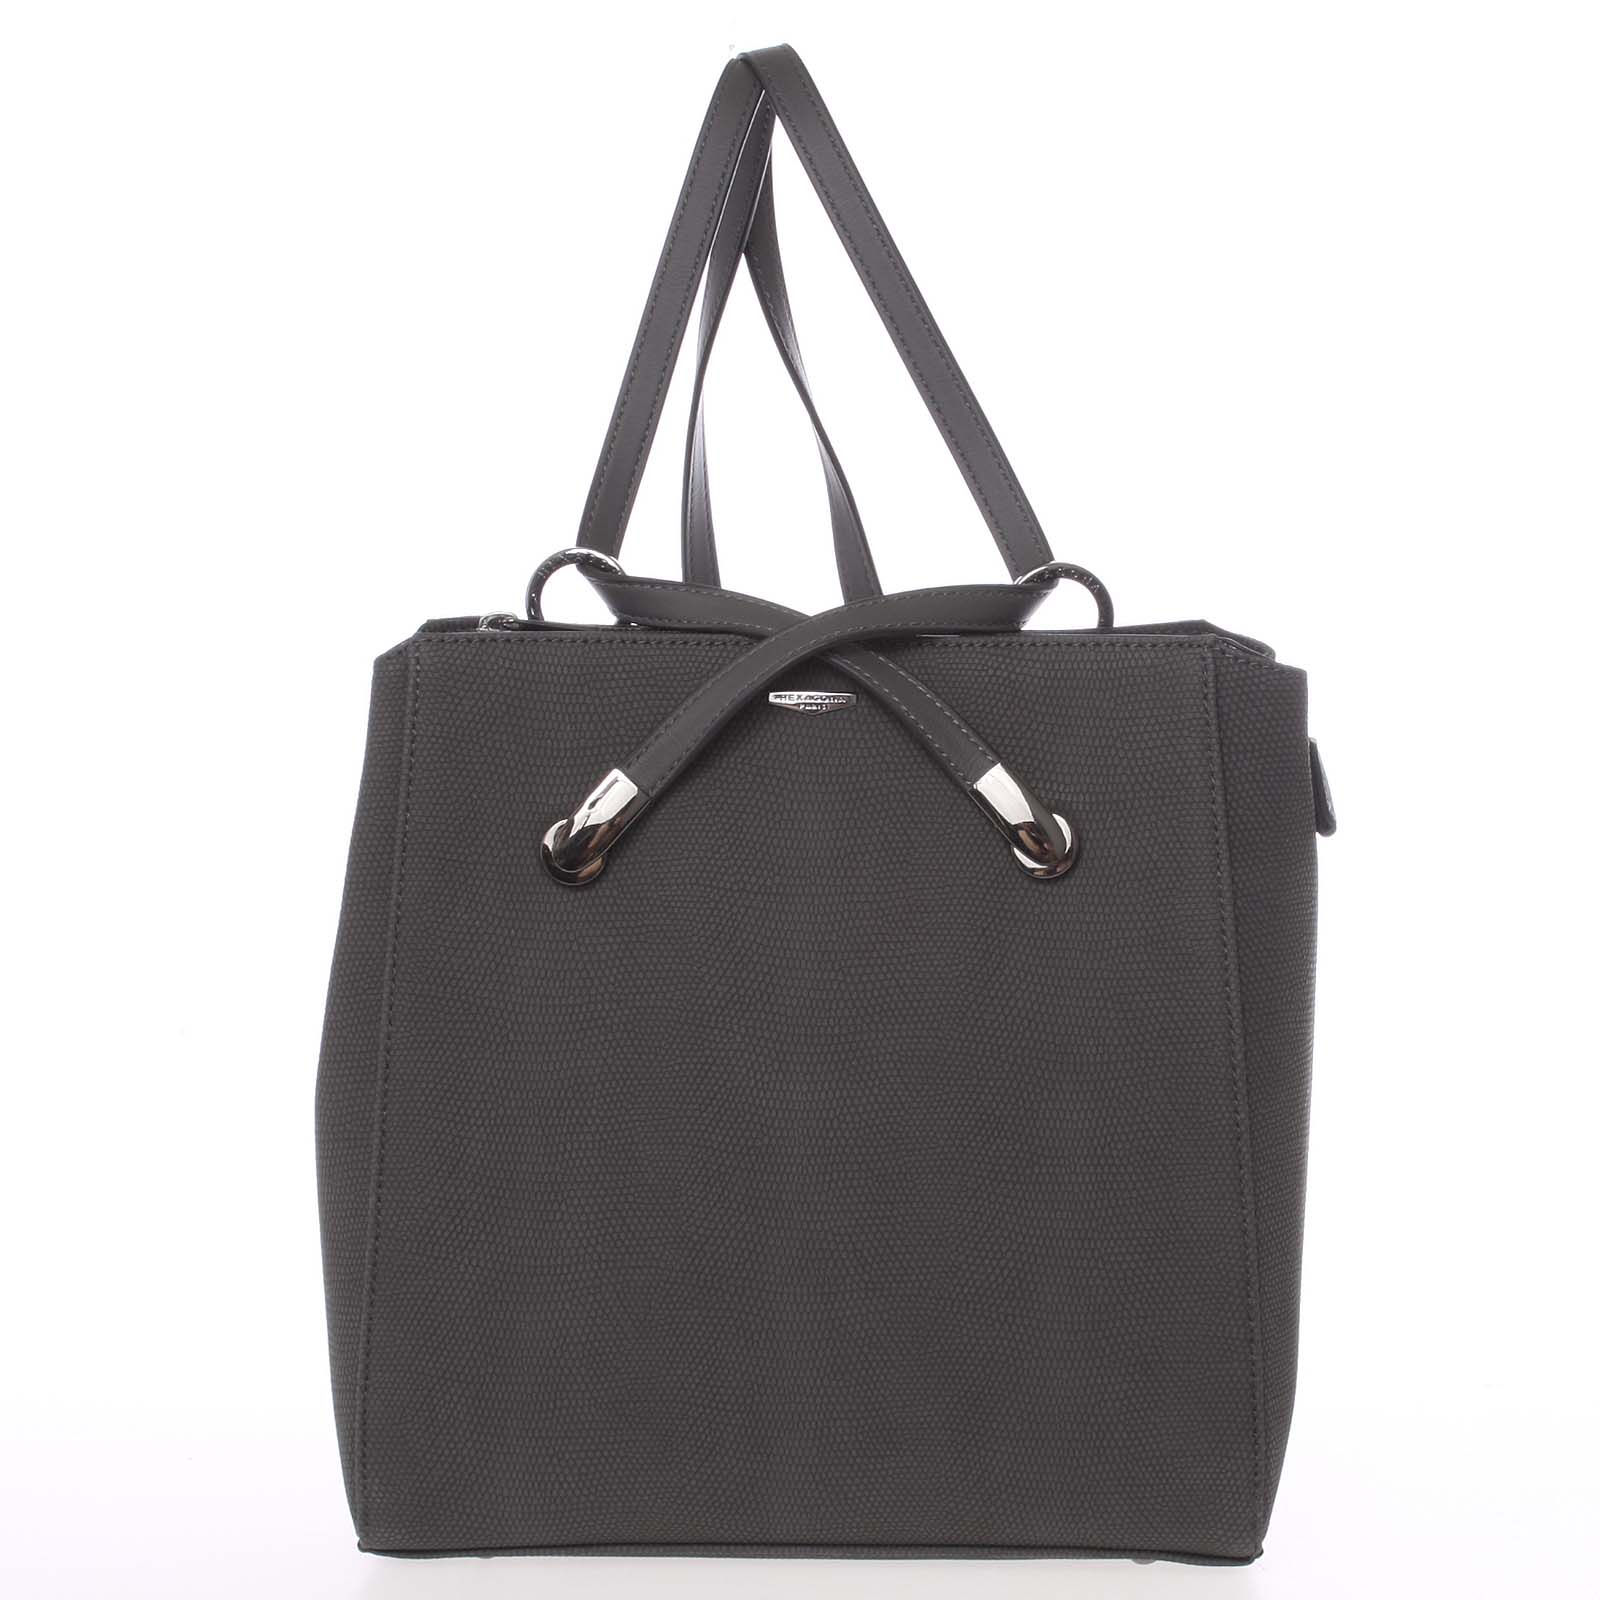 Elegantní strukturovaný šedý batůžek/kabelka - Hexagona Bure